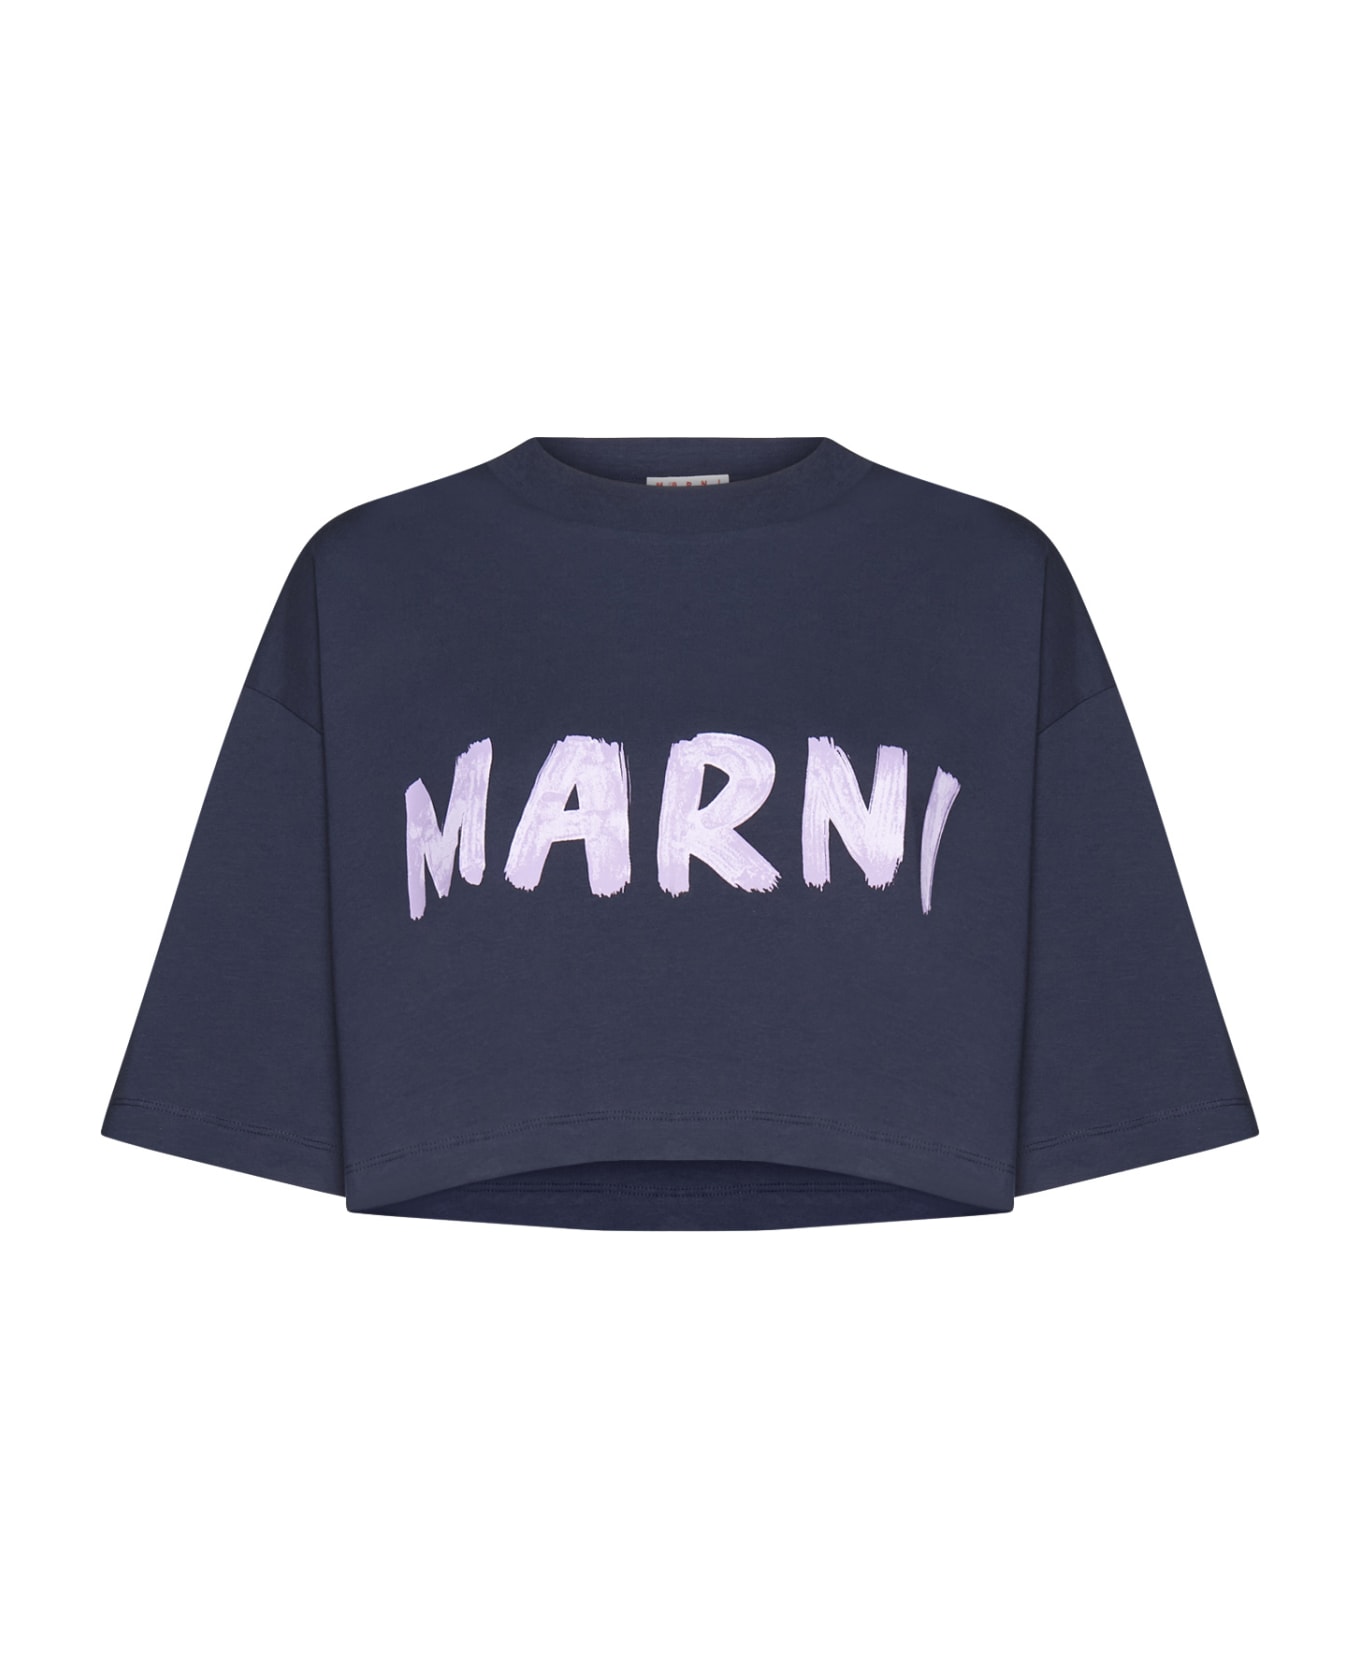 Marni T-Shirt - Blublack Tシャツ